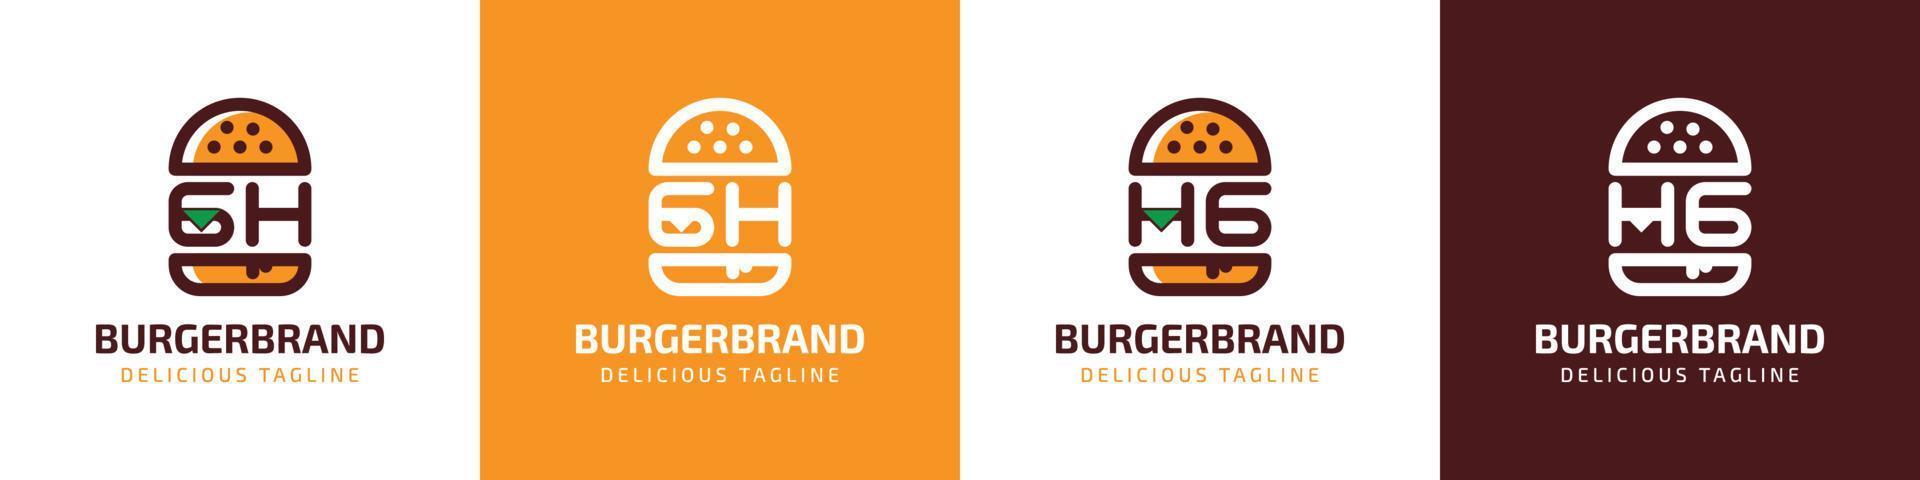 lettre gh et hg Burger logo, adapté pour tout affaires en relation à Burger avec gh ou hg initiales. vecteur